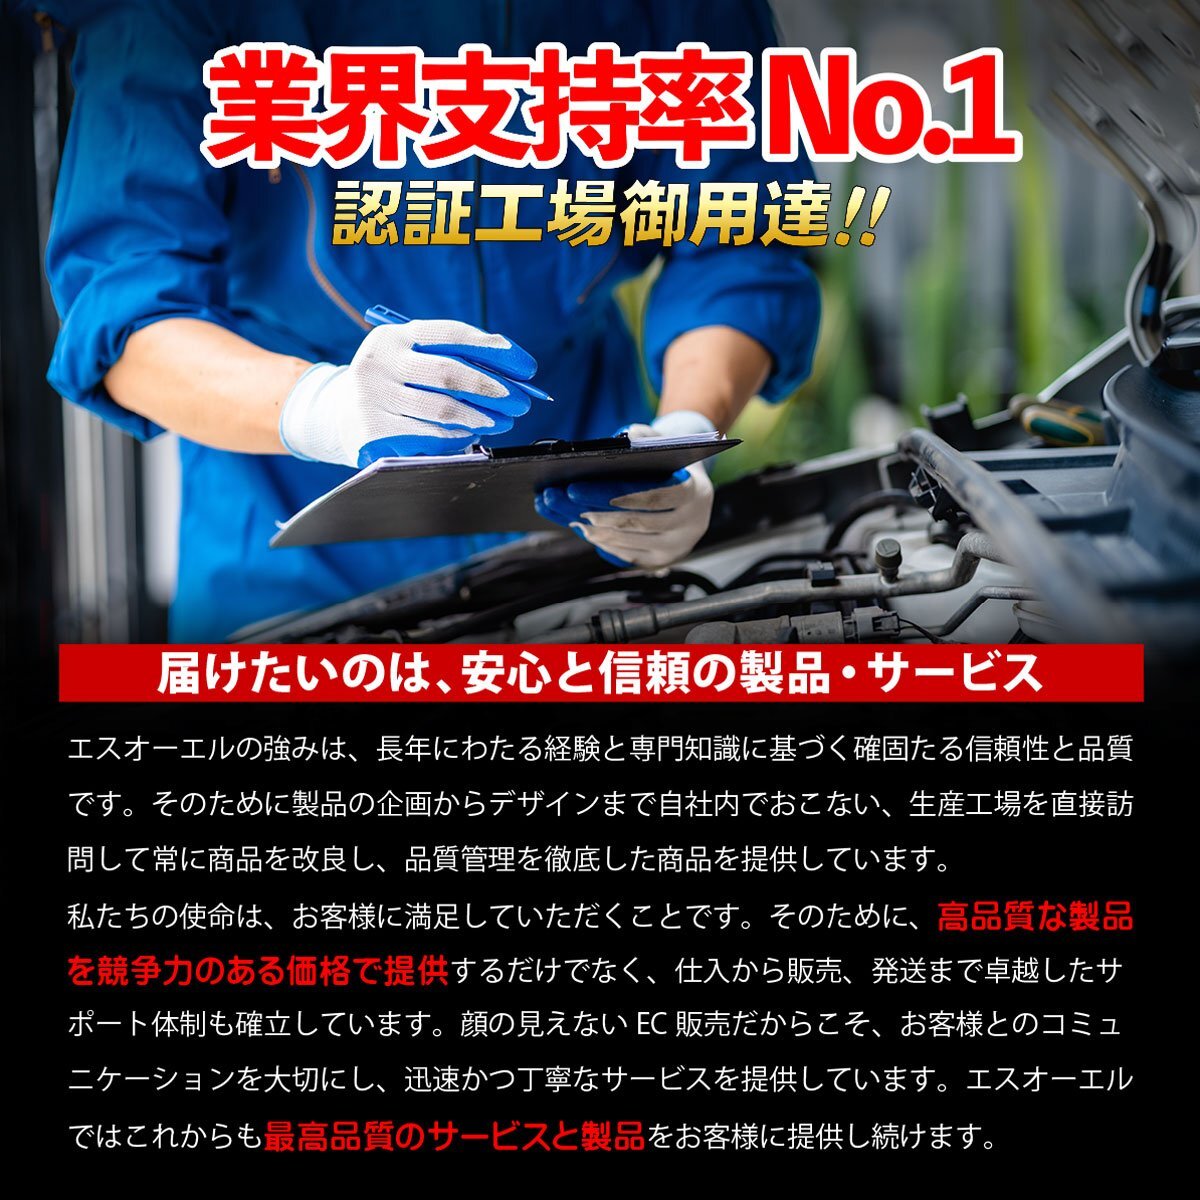  Daihatsu Hijet S201P S211P передняя распорка контроль arm правая сторона отгрузка конечный срок 18 час марка машины особый дизайн 48605-B5010